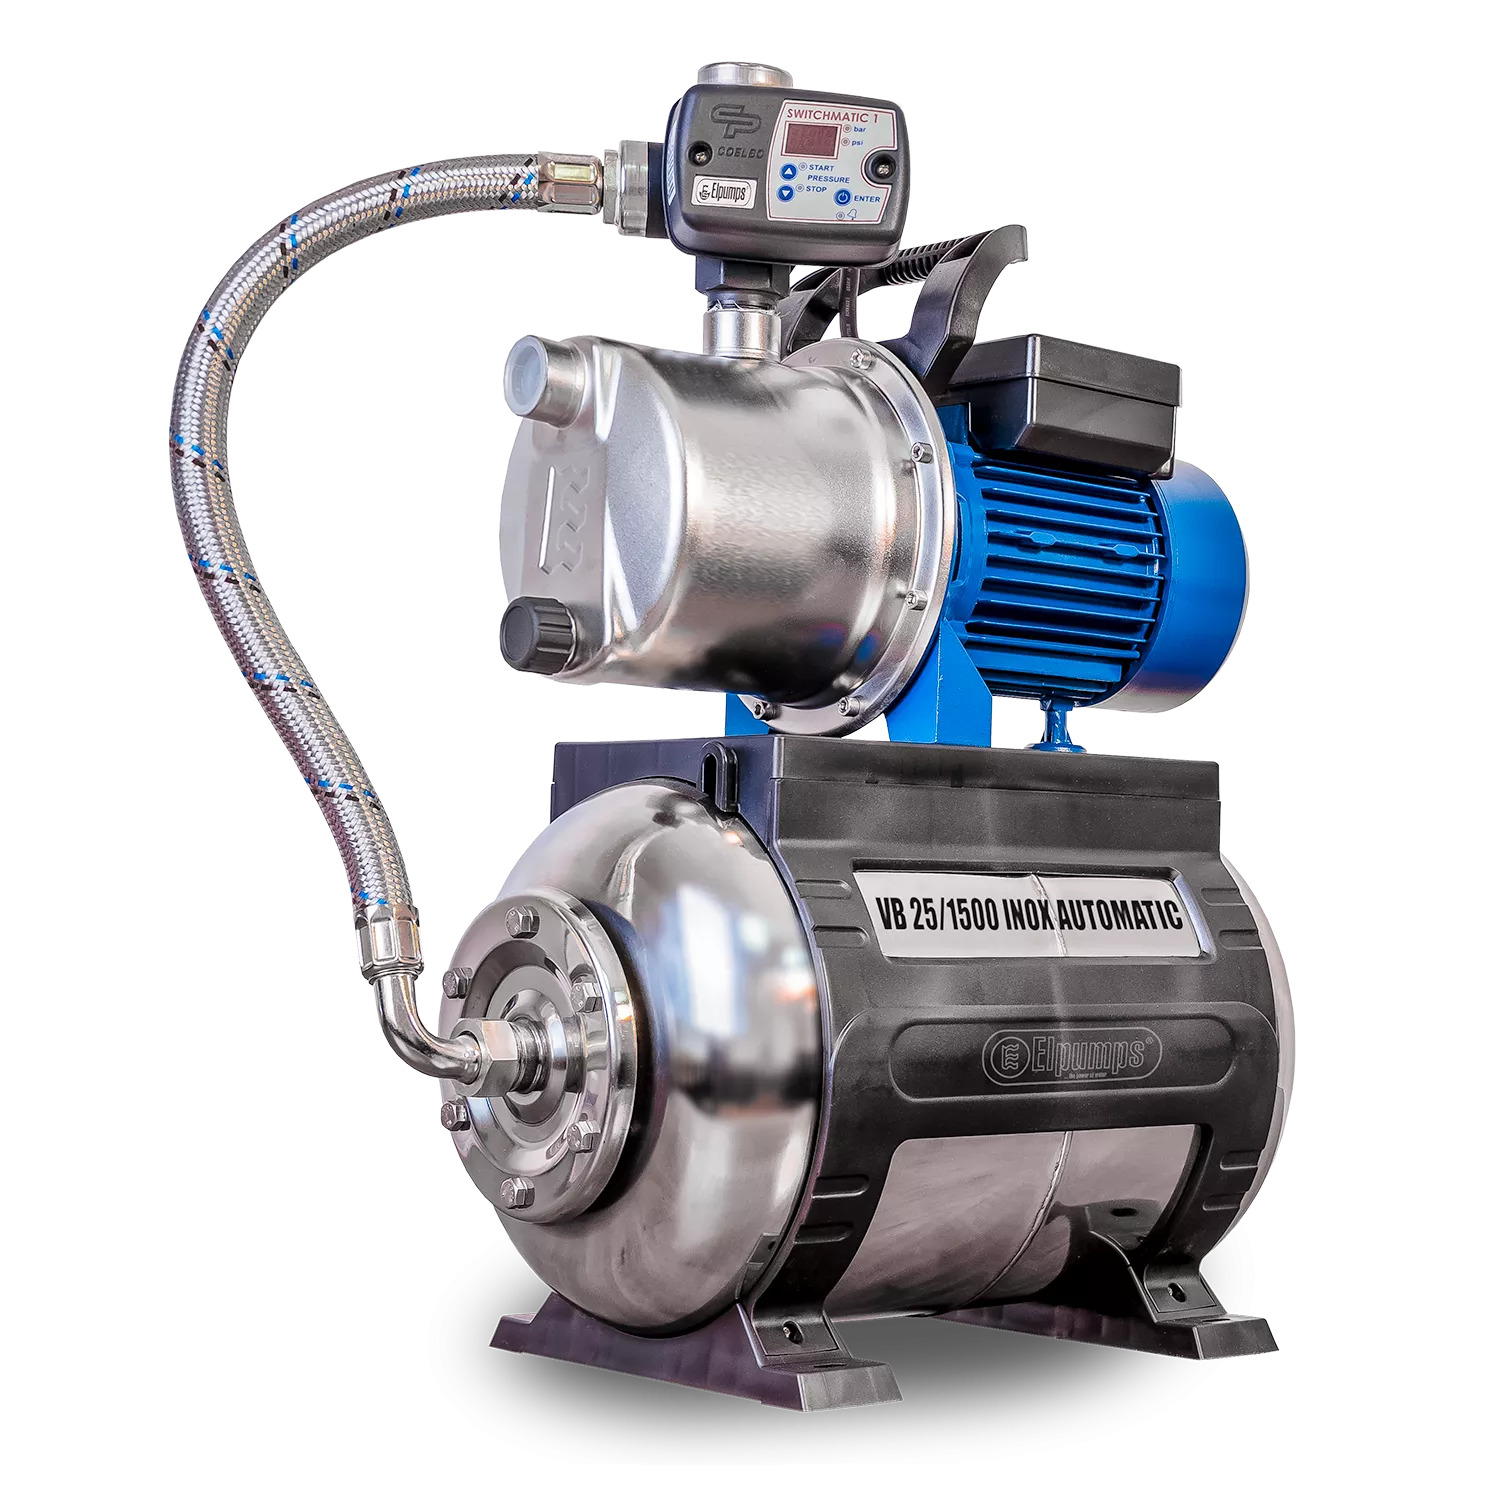 VB 25/1500 INOX Automatic Installation d'eau domestique, avec roue, corps de pompe et réservoir de pression INOX, 1500 W, 6.300 l/h, 4,8 bar, 25 L